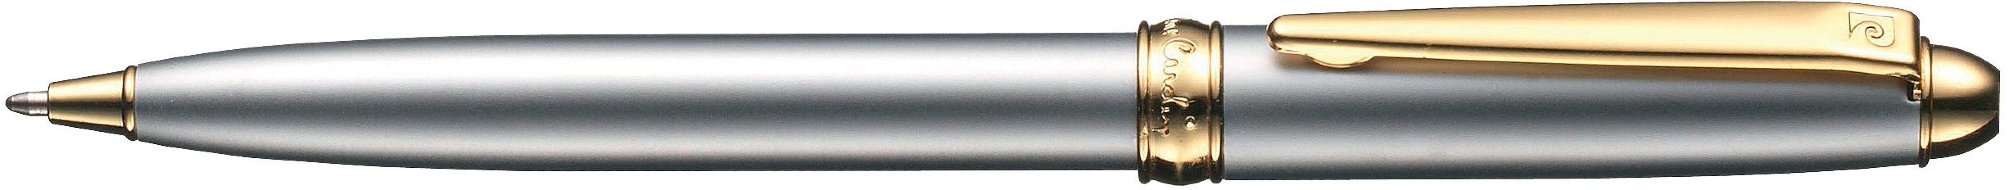 Шариковая ручка Pierre Cardin Eco серебристый лак, позолота